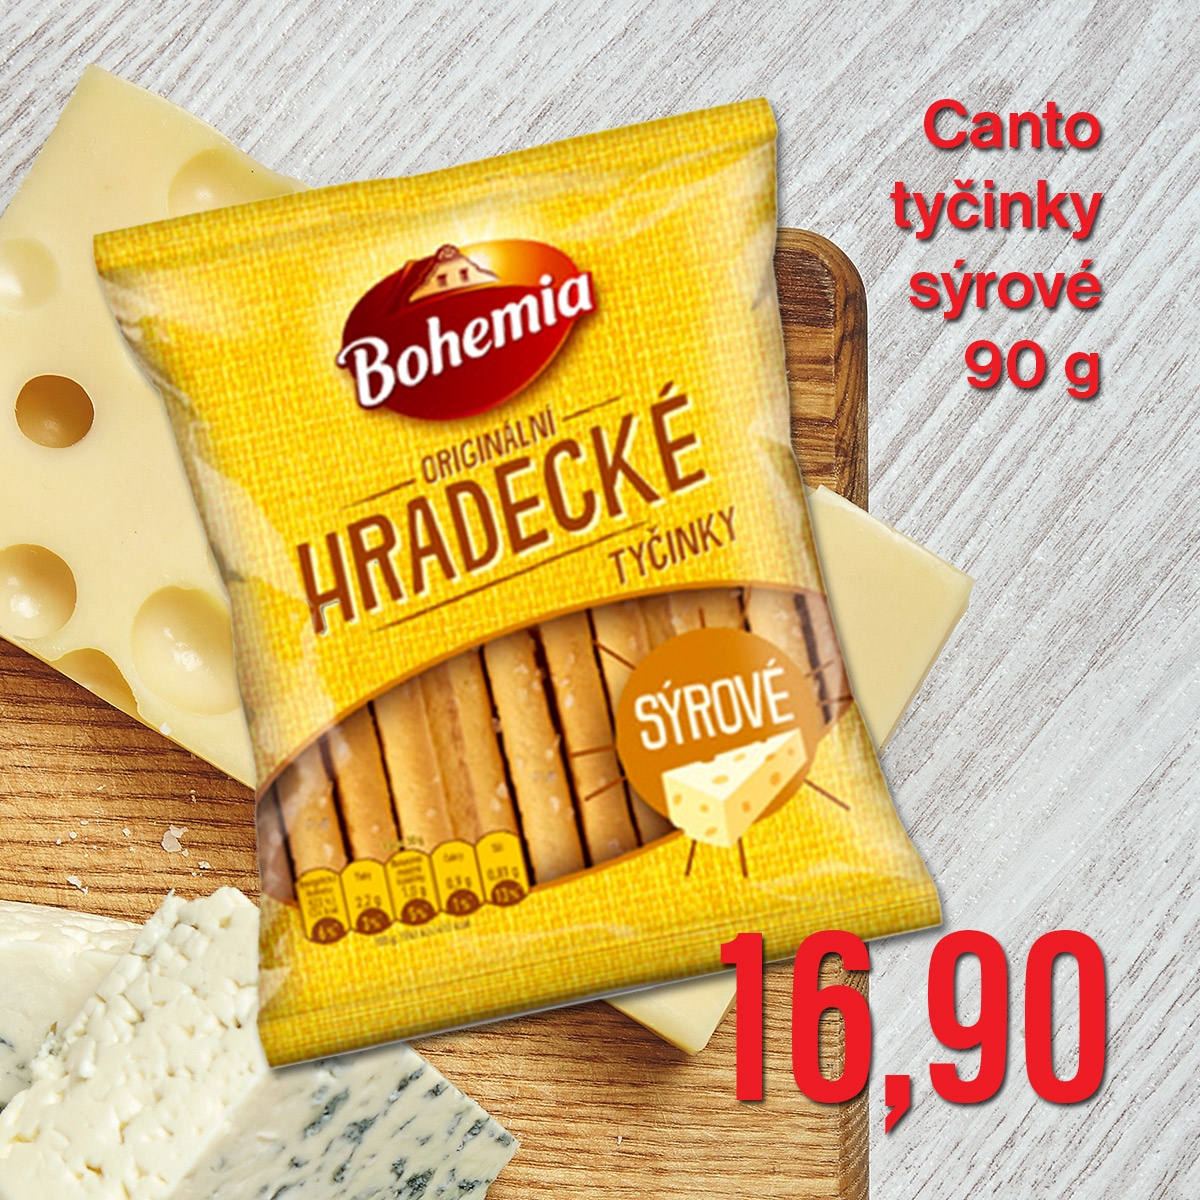 Canto tyčinky sýrové 90 g